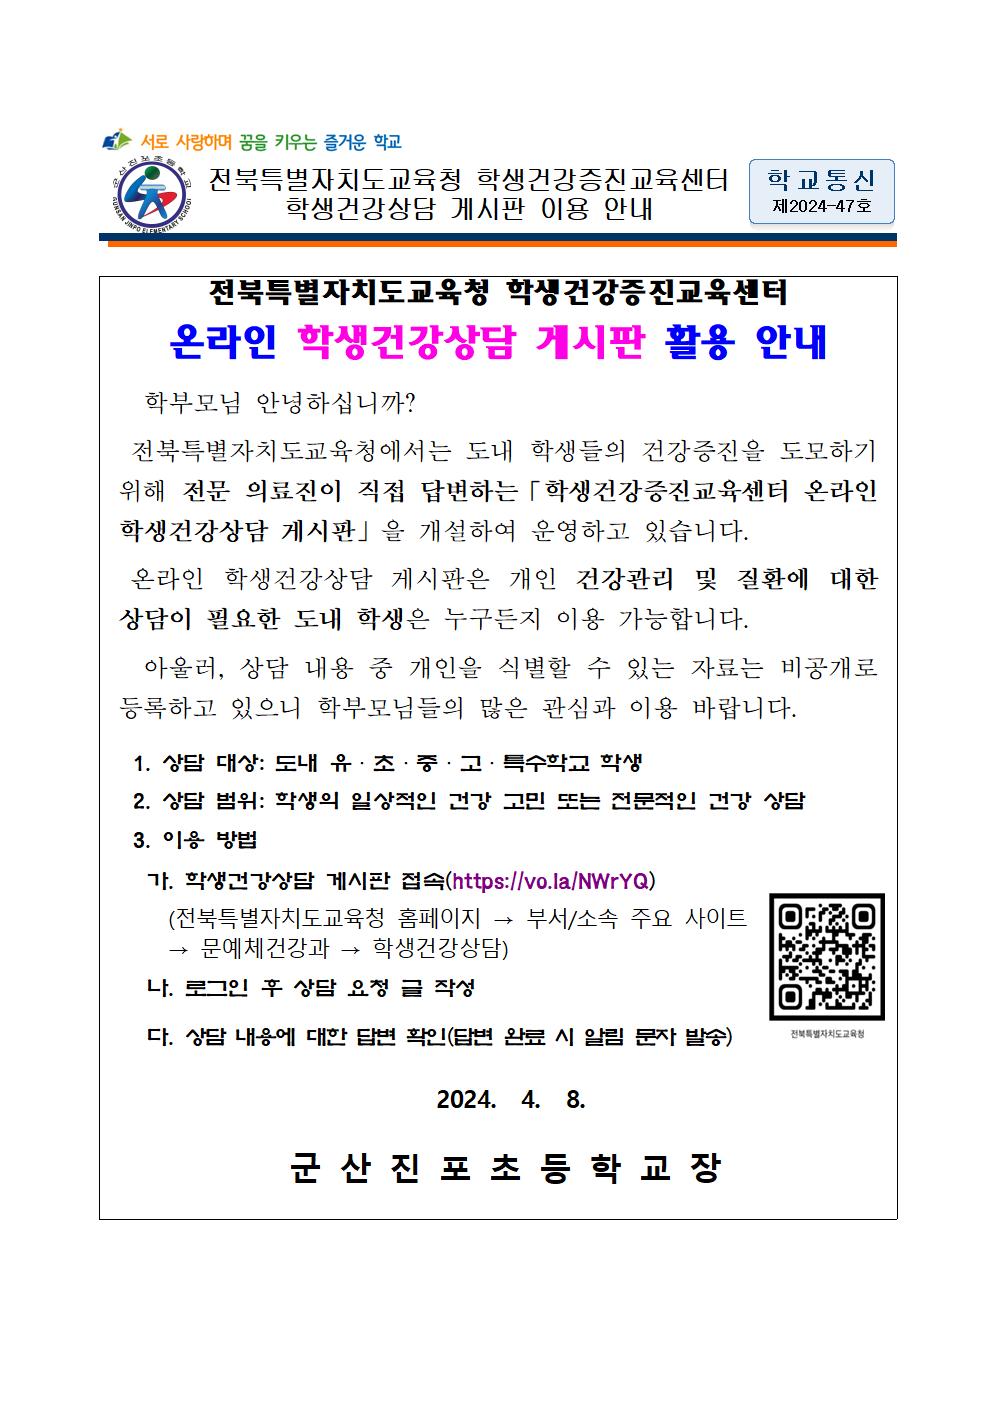 전북특별자치도교육청 학생건강증진교육센터 학생건강상담 게시판 이용 안내001